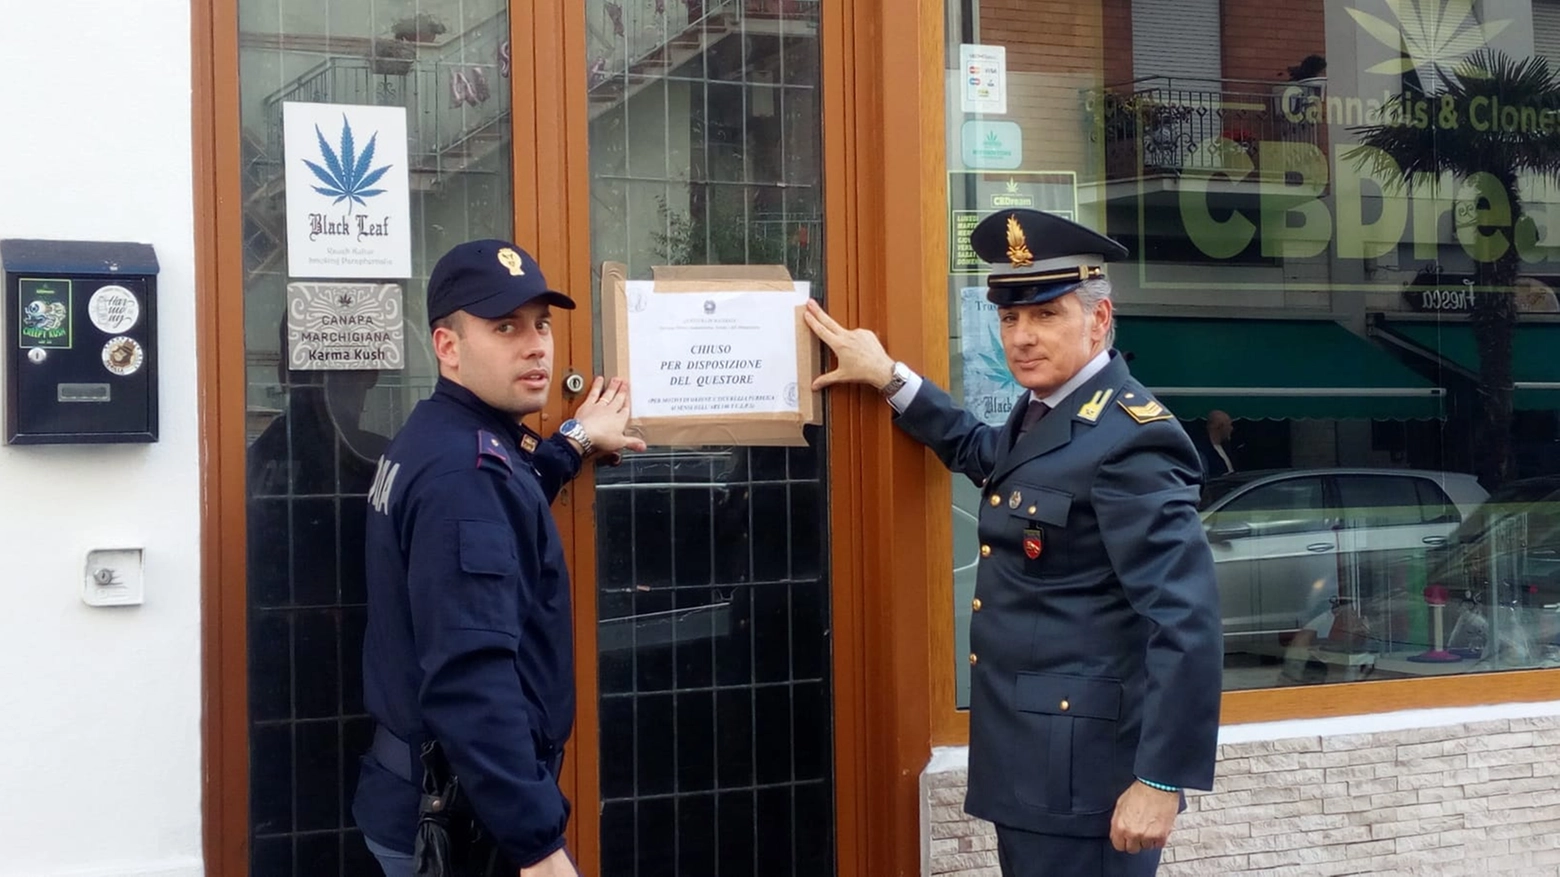 Civitanova, il cannabis shop chiuso dal questore di Macerata